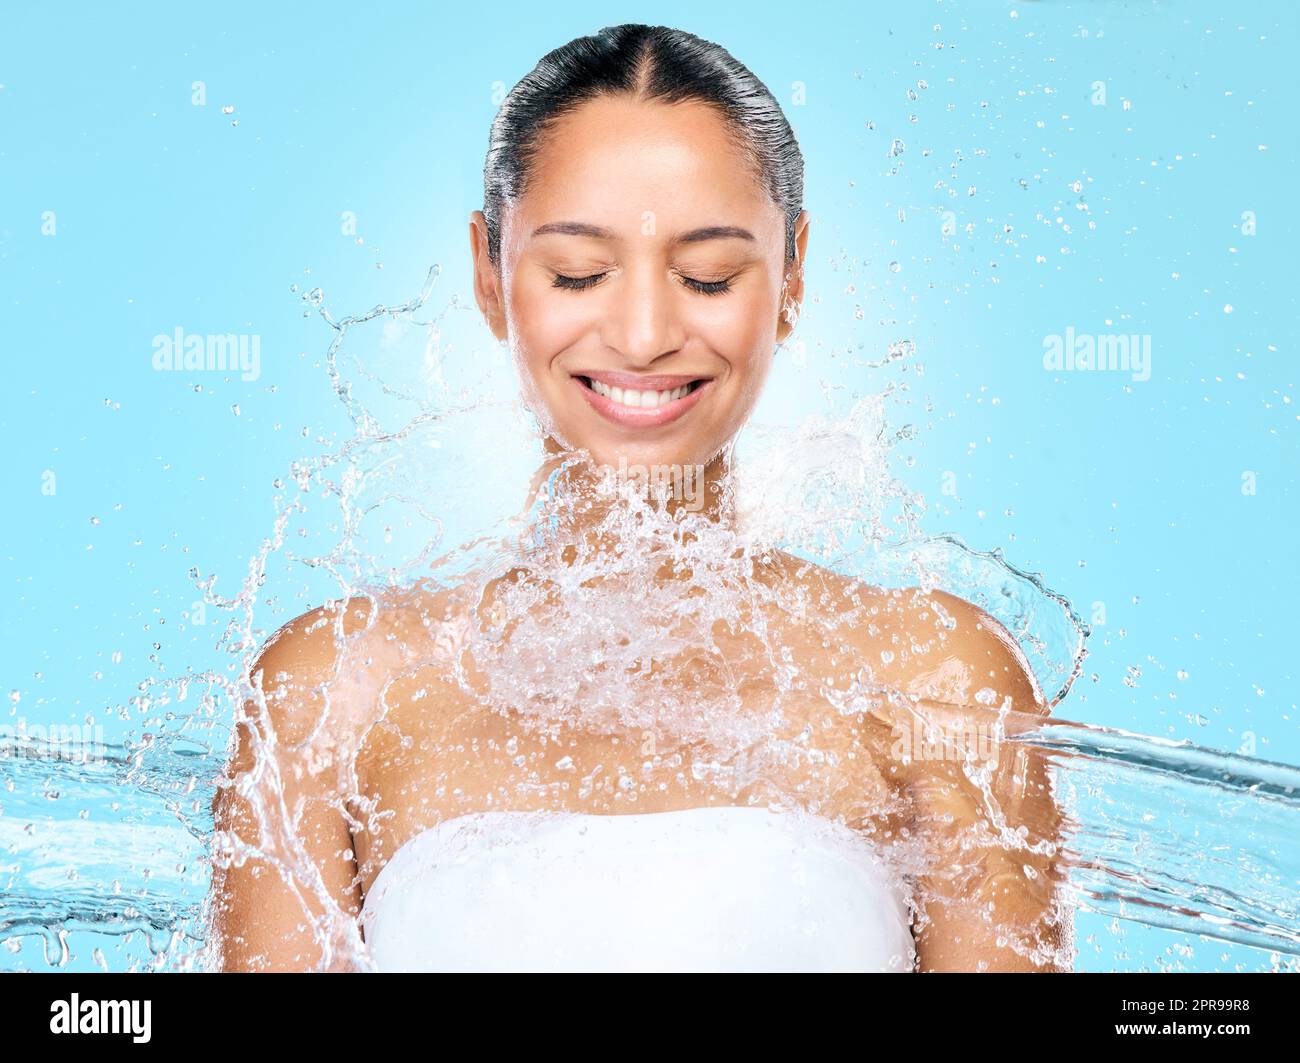 Toujours pratiquer une bonne hygiène. Photo de studio d'éclaboussures d'eau propre contre une femme. Banque D'Images